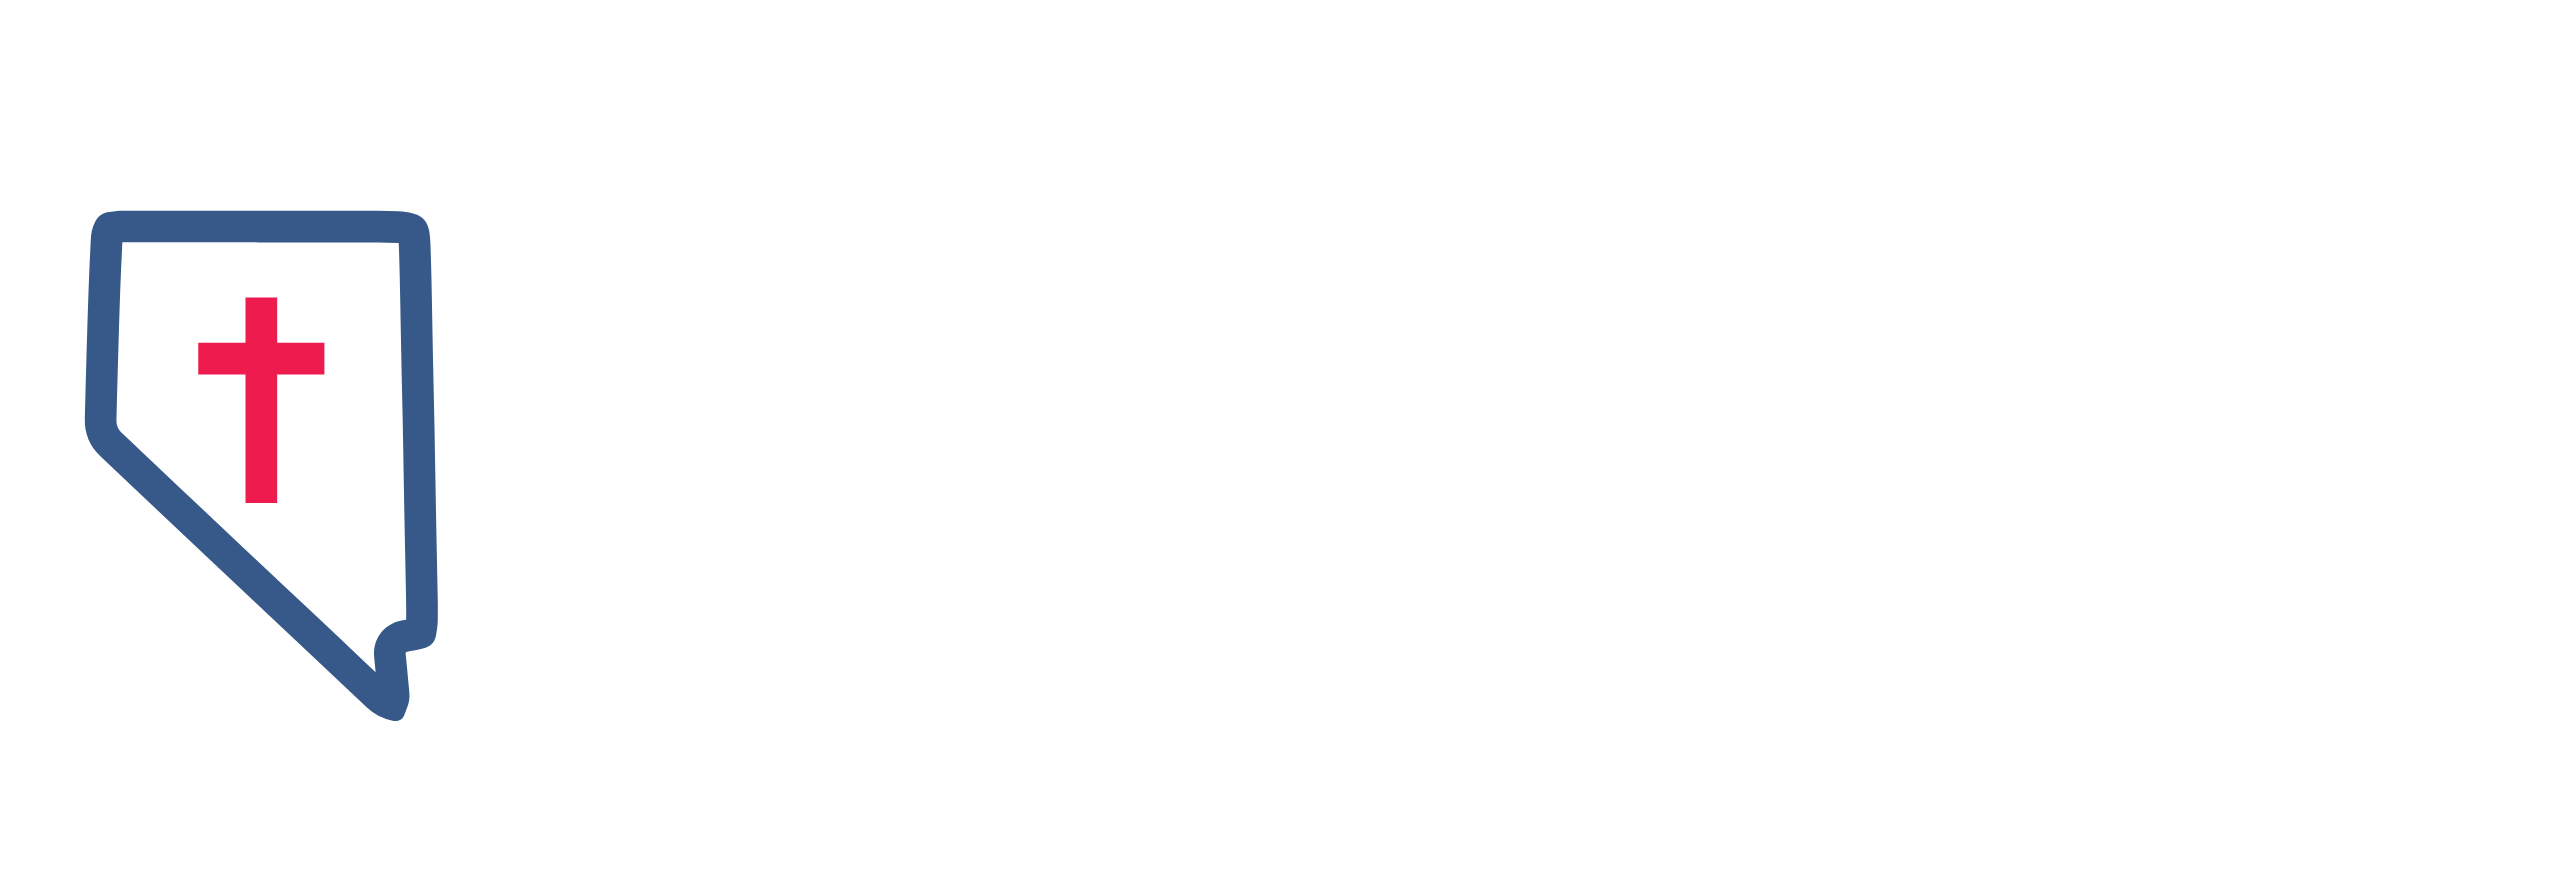 Nevada Catholic Conference